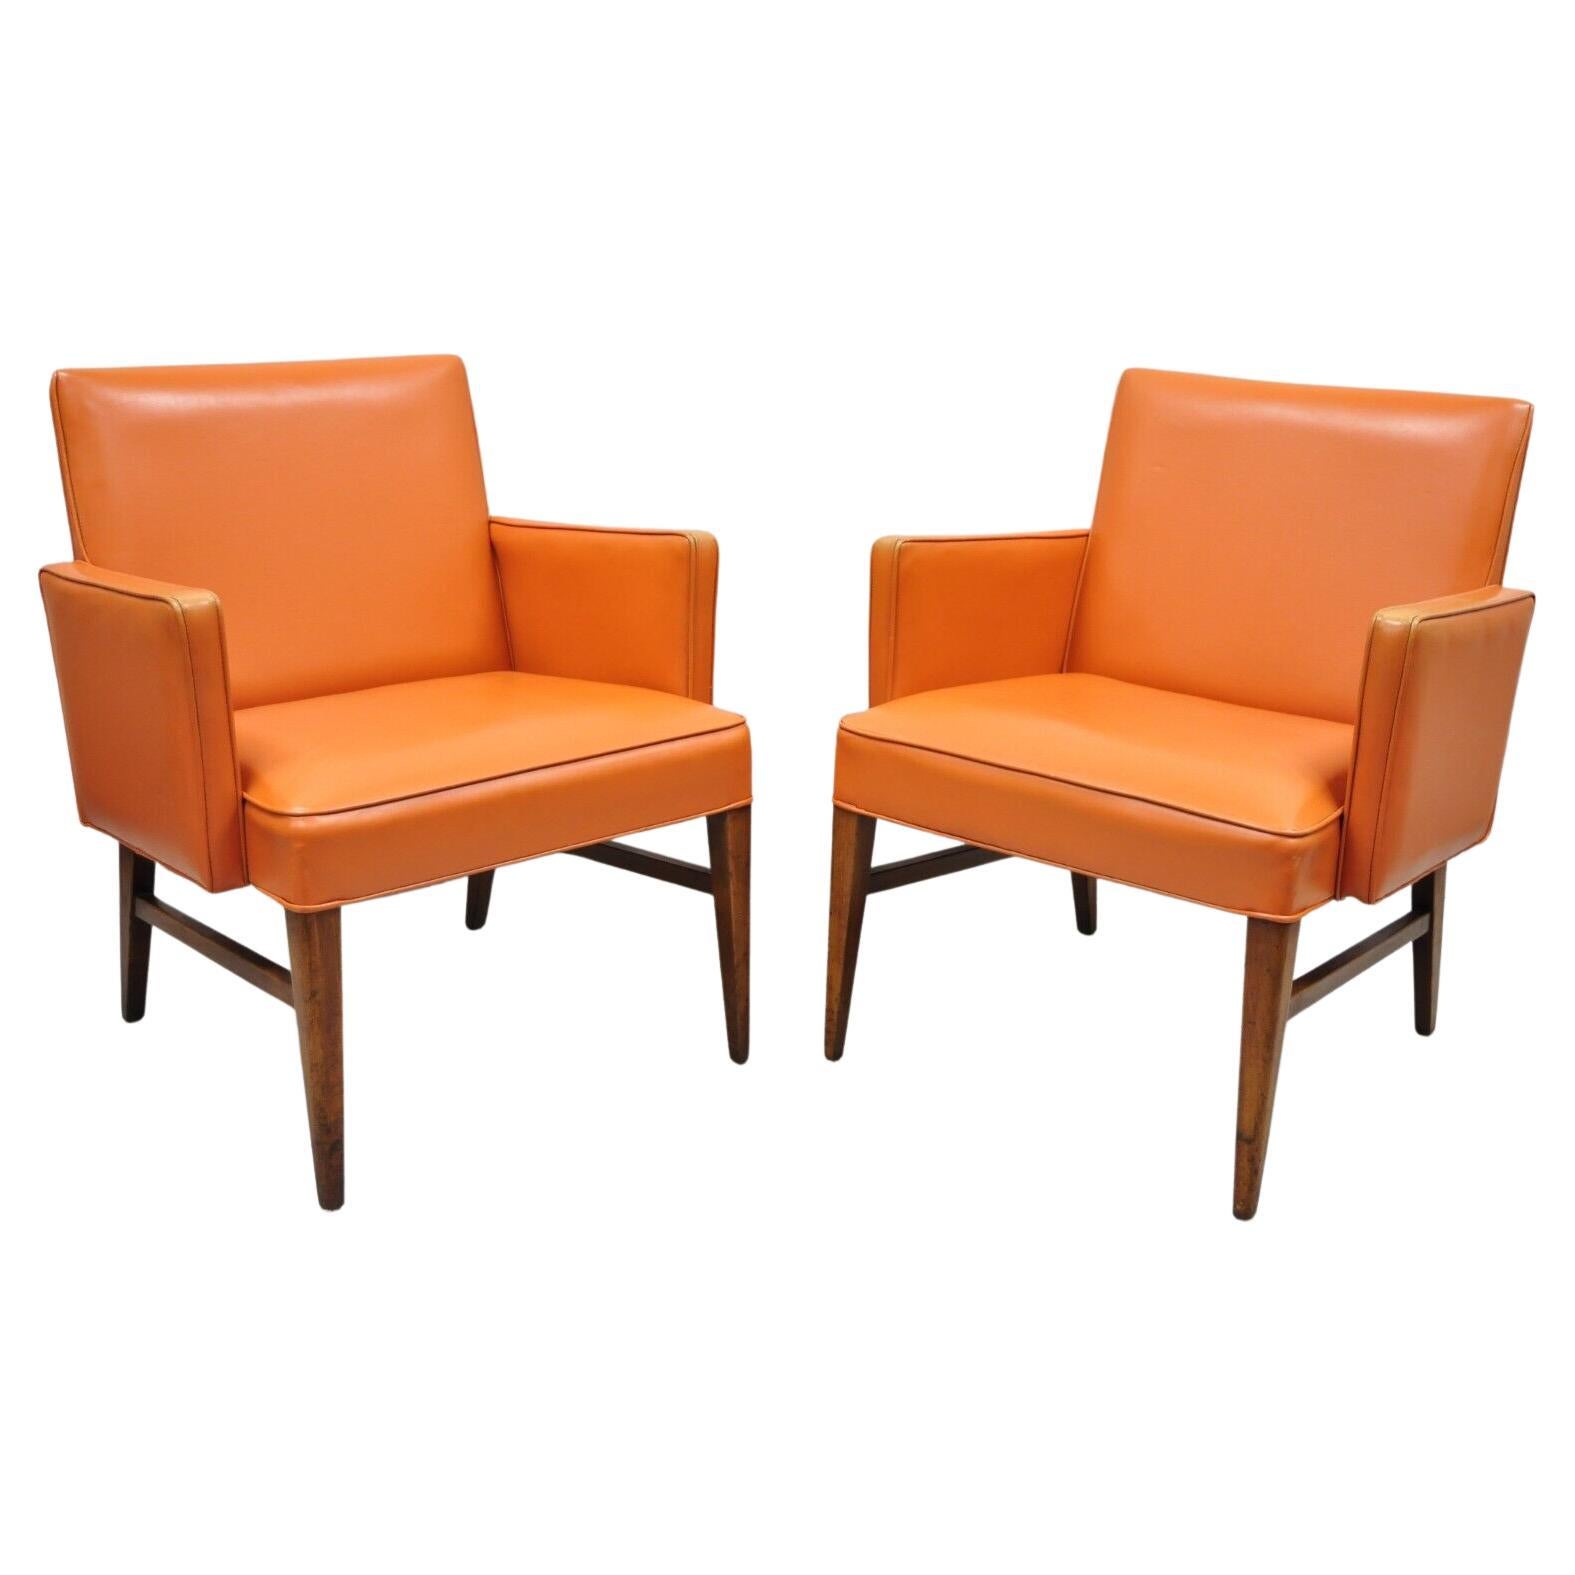 Paire de fauteuils club en vinyle orange de style Jens Risom, moderne du milieu du siècle dernier